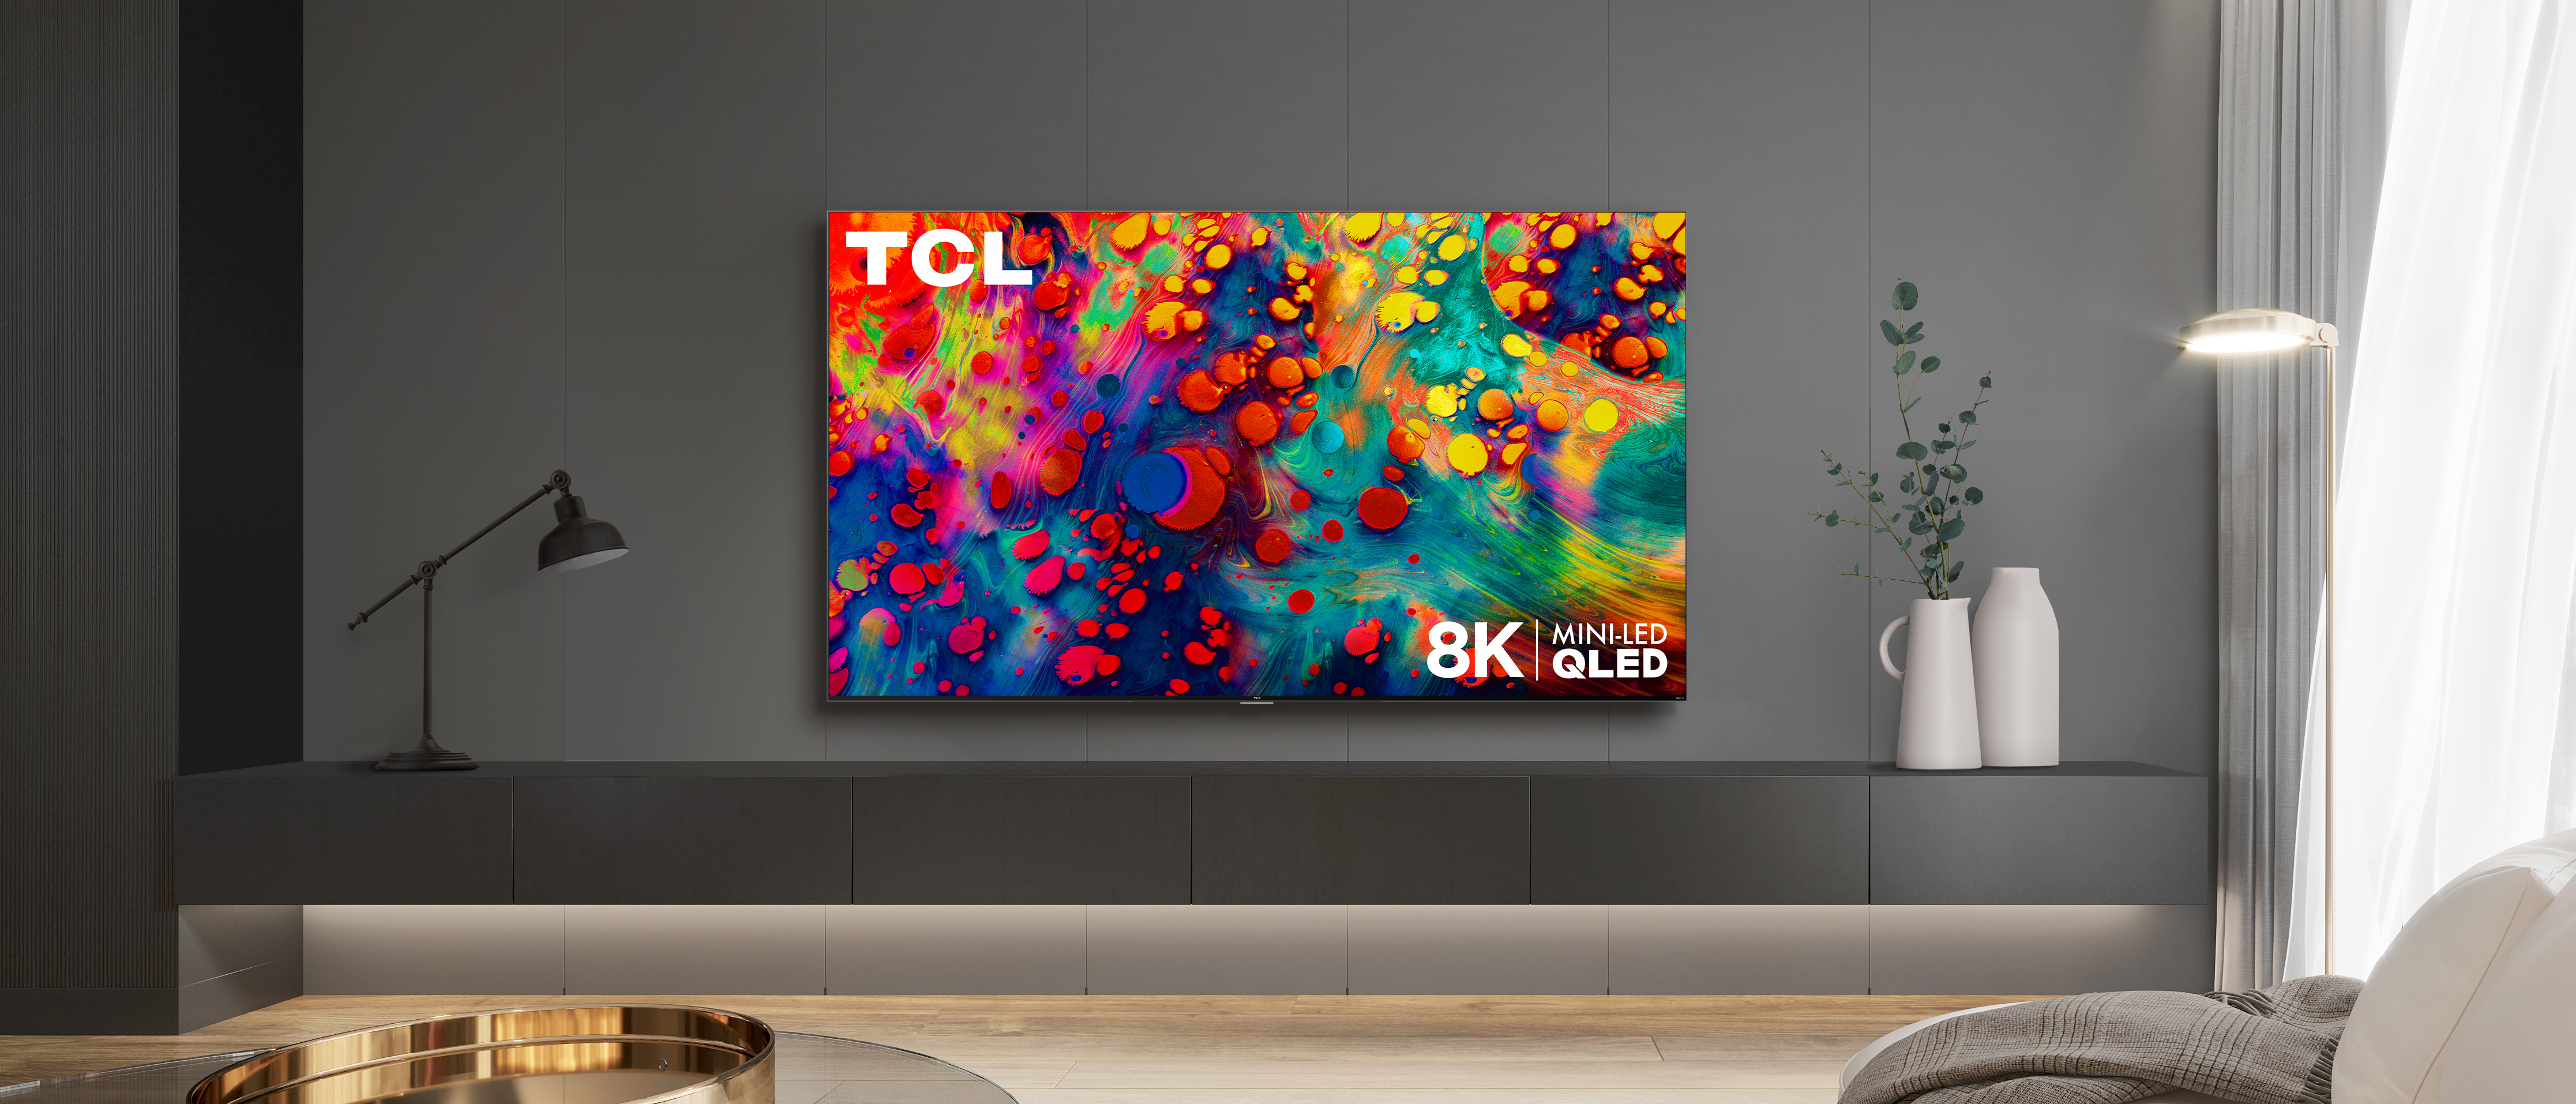 Телевизор tcl 65 qled. TCL Mini-led TV. TCL QLED. Телевизор ТСЛ мини лед.